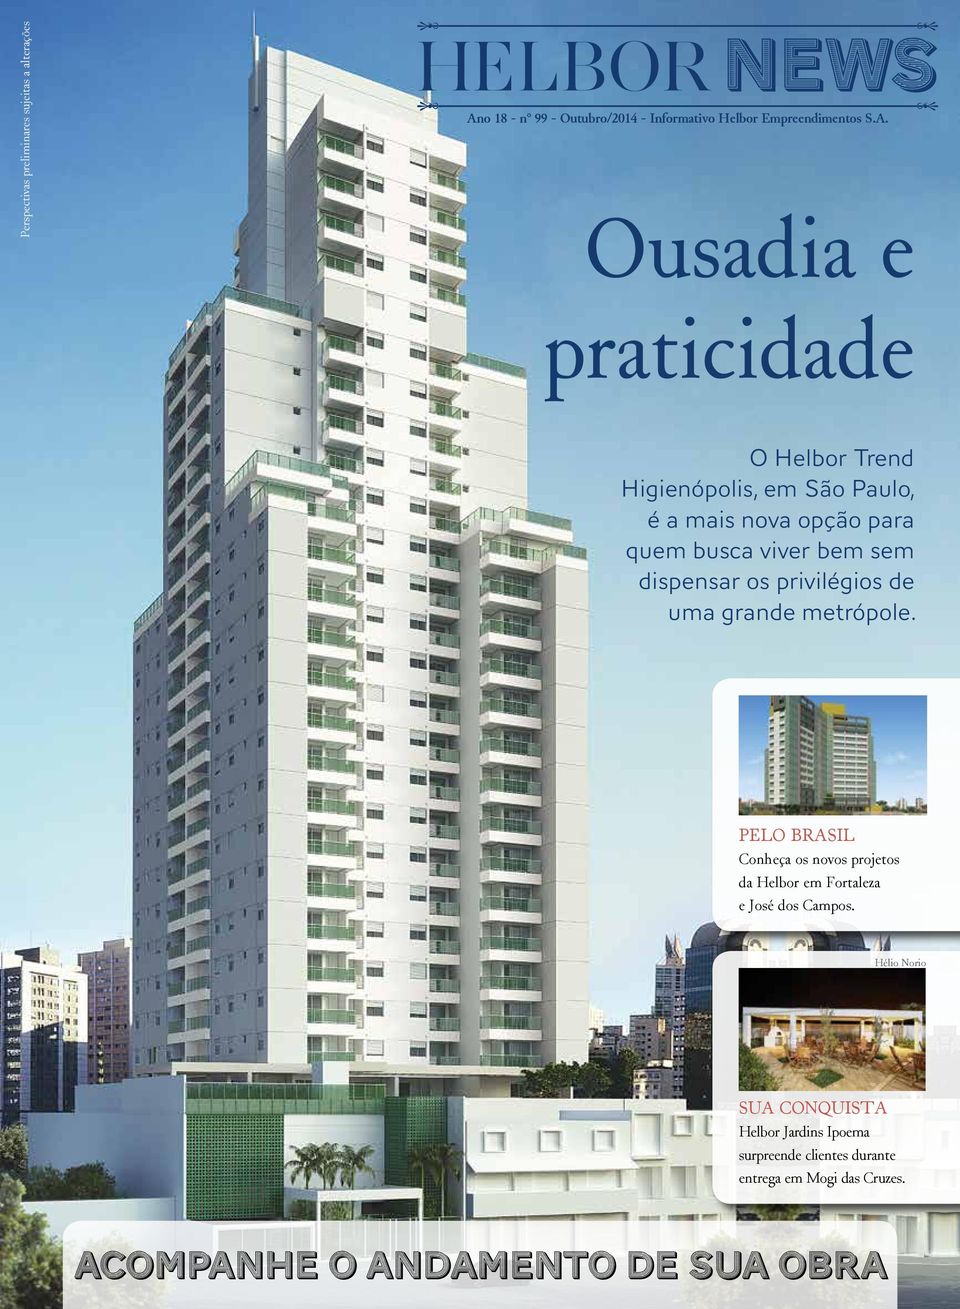 Ousadia e praticidade O Helbor Trend Higienópolis, em São Paulo, é a mais nova opção para quem busca viver bem sem dispensar